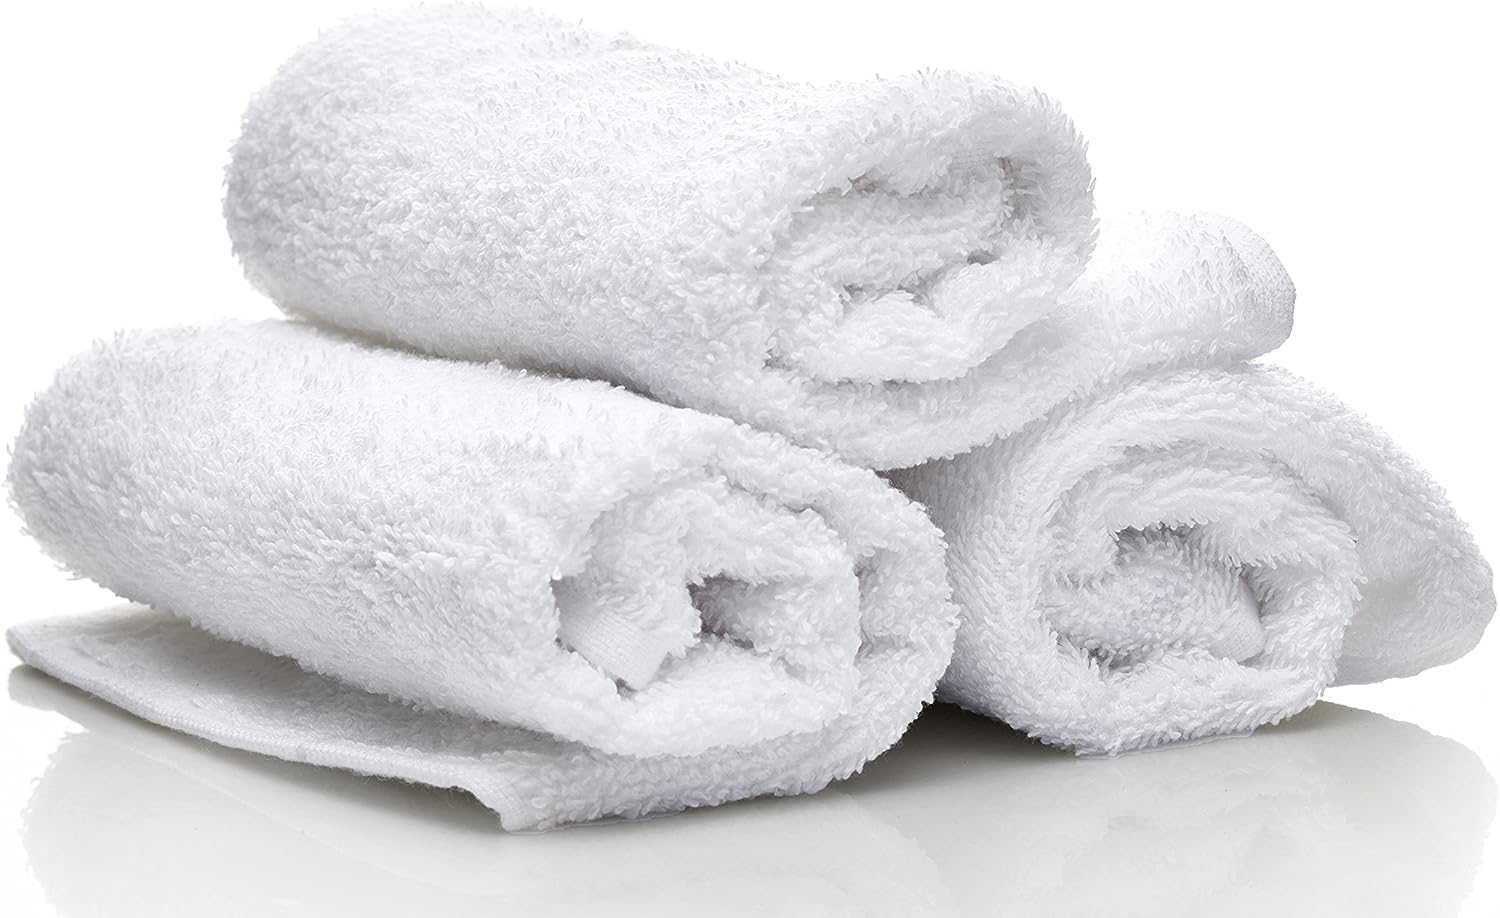 Utopia Towels Paquete de 6 Juego de Toallas de baño, 100% algodón Hilado en  Anillo (60 x 120 CM) (2 colores) » Chollometro